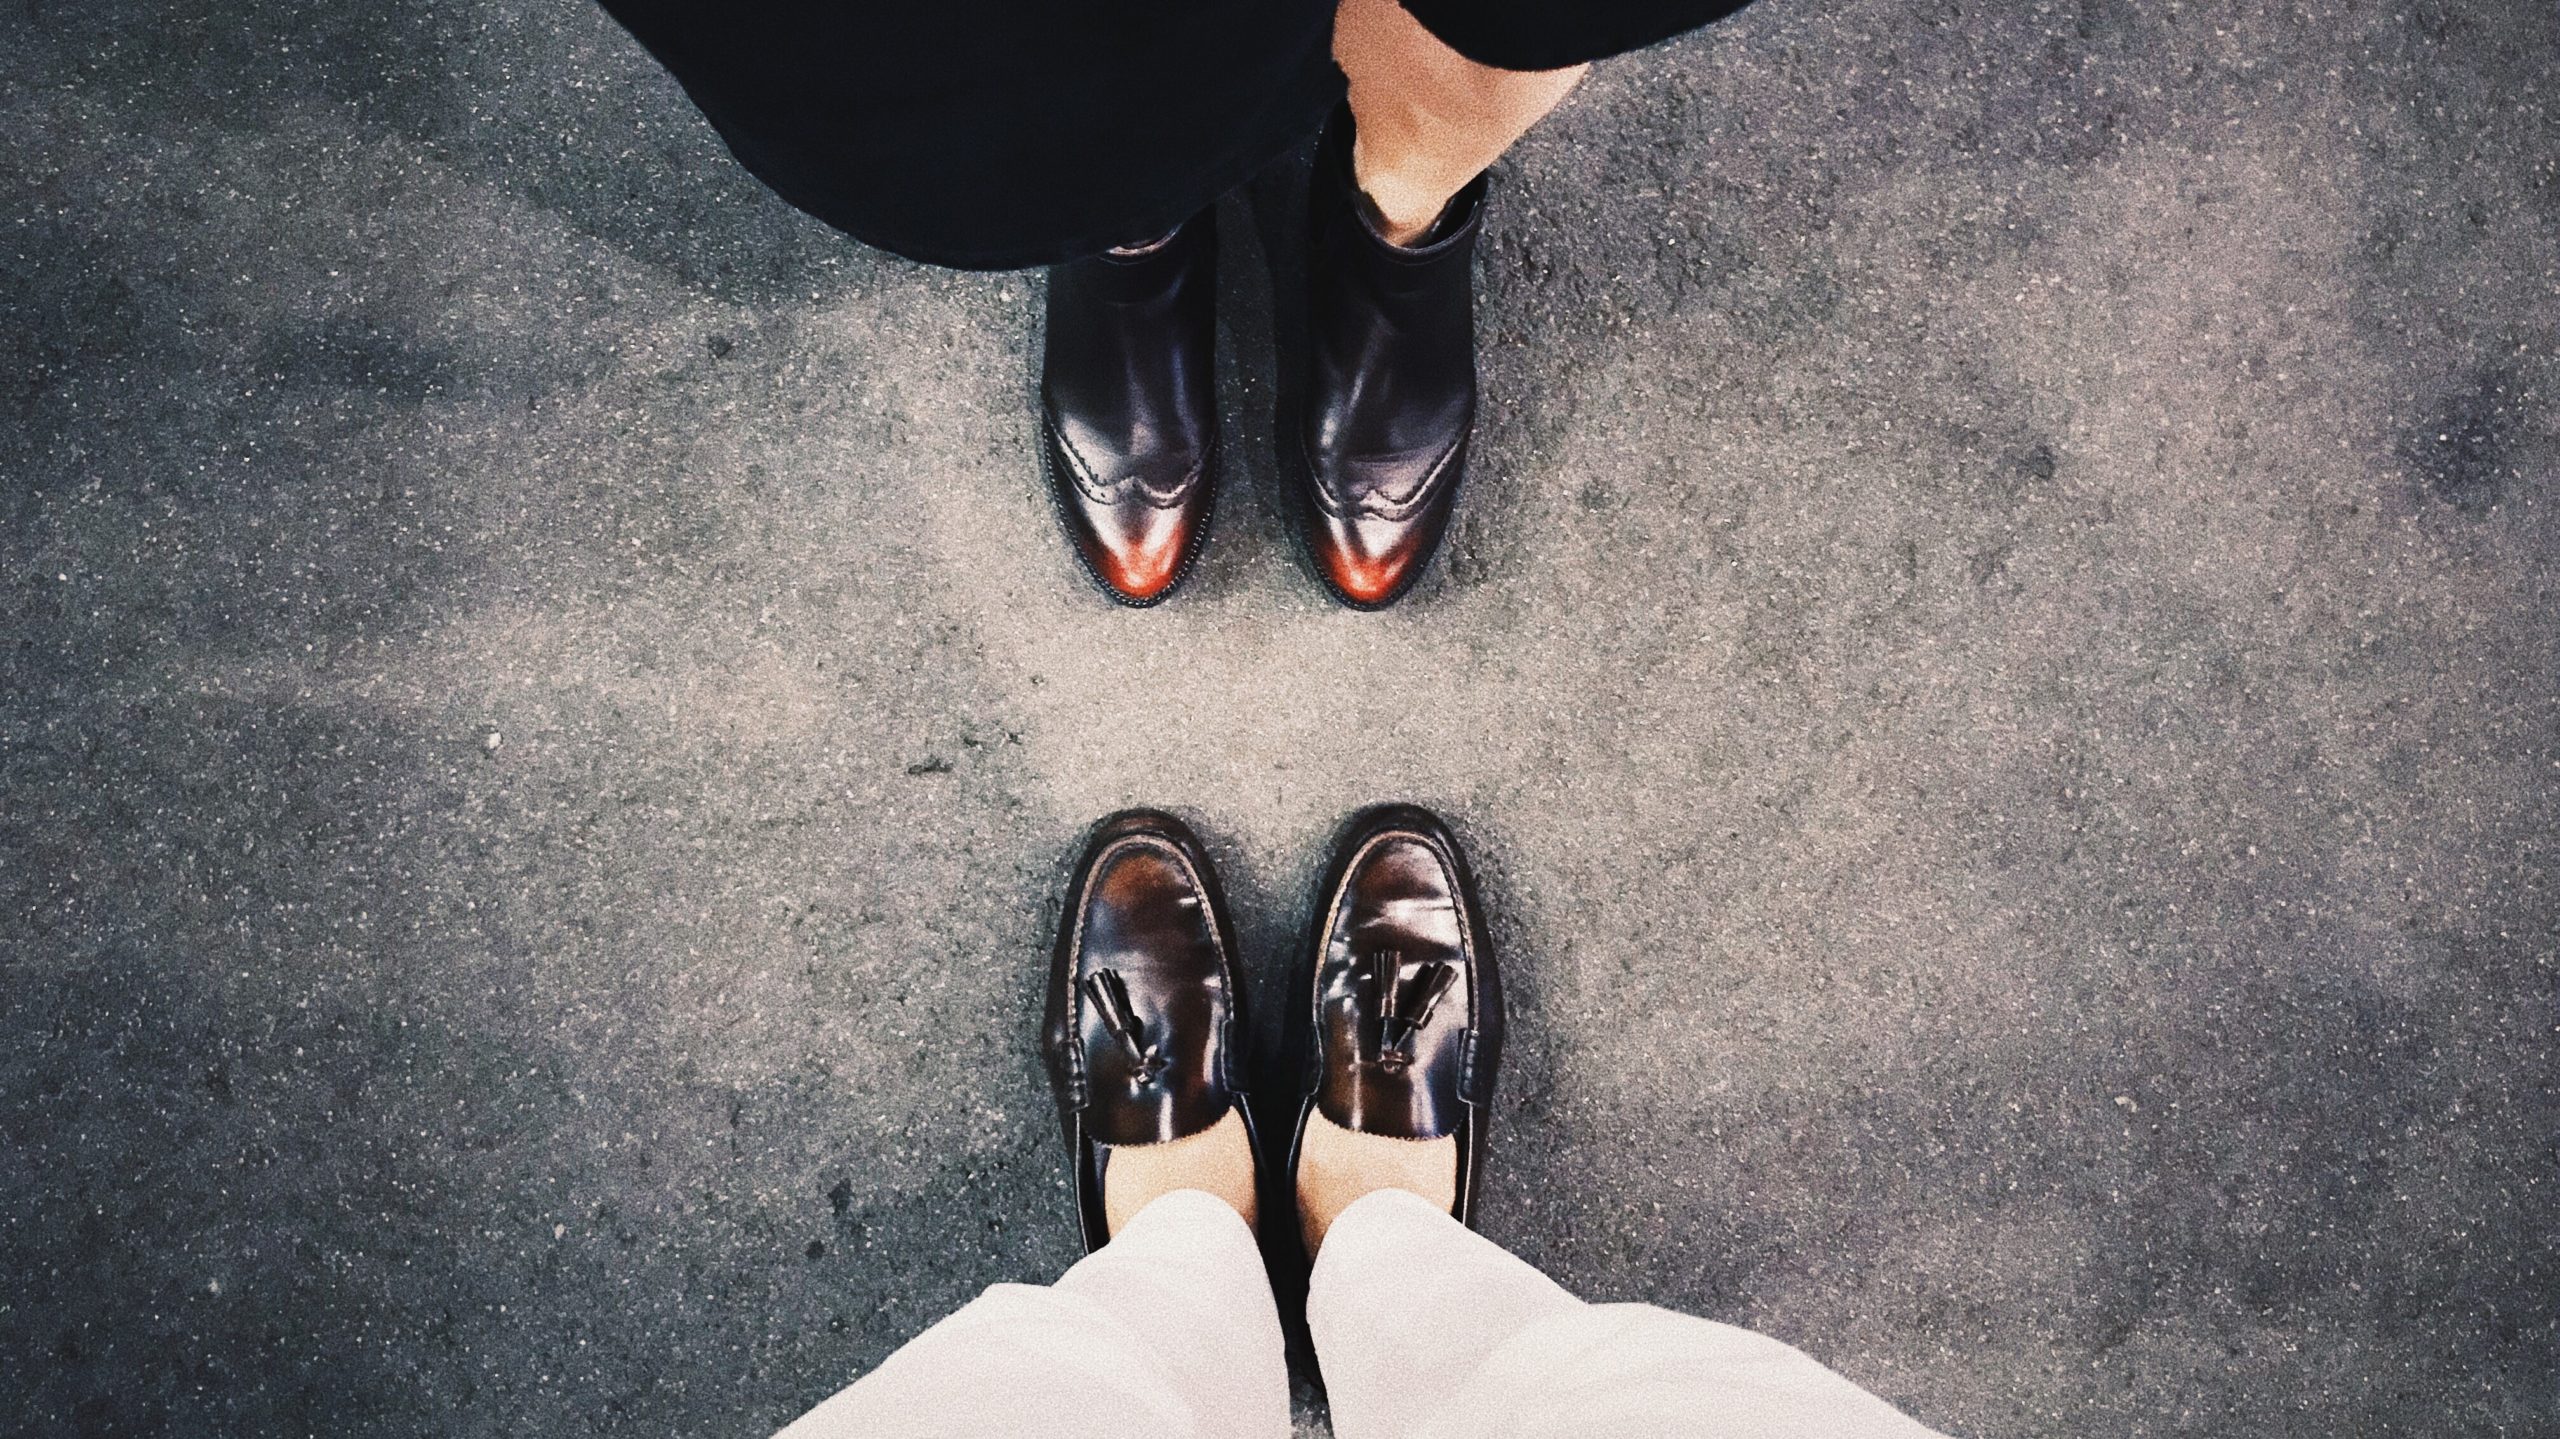 Двое пара брюк. Красивые мужские туфли на ногах. Пара ног в туфлях. Двое туфель. Две пары ботинок.